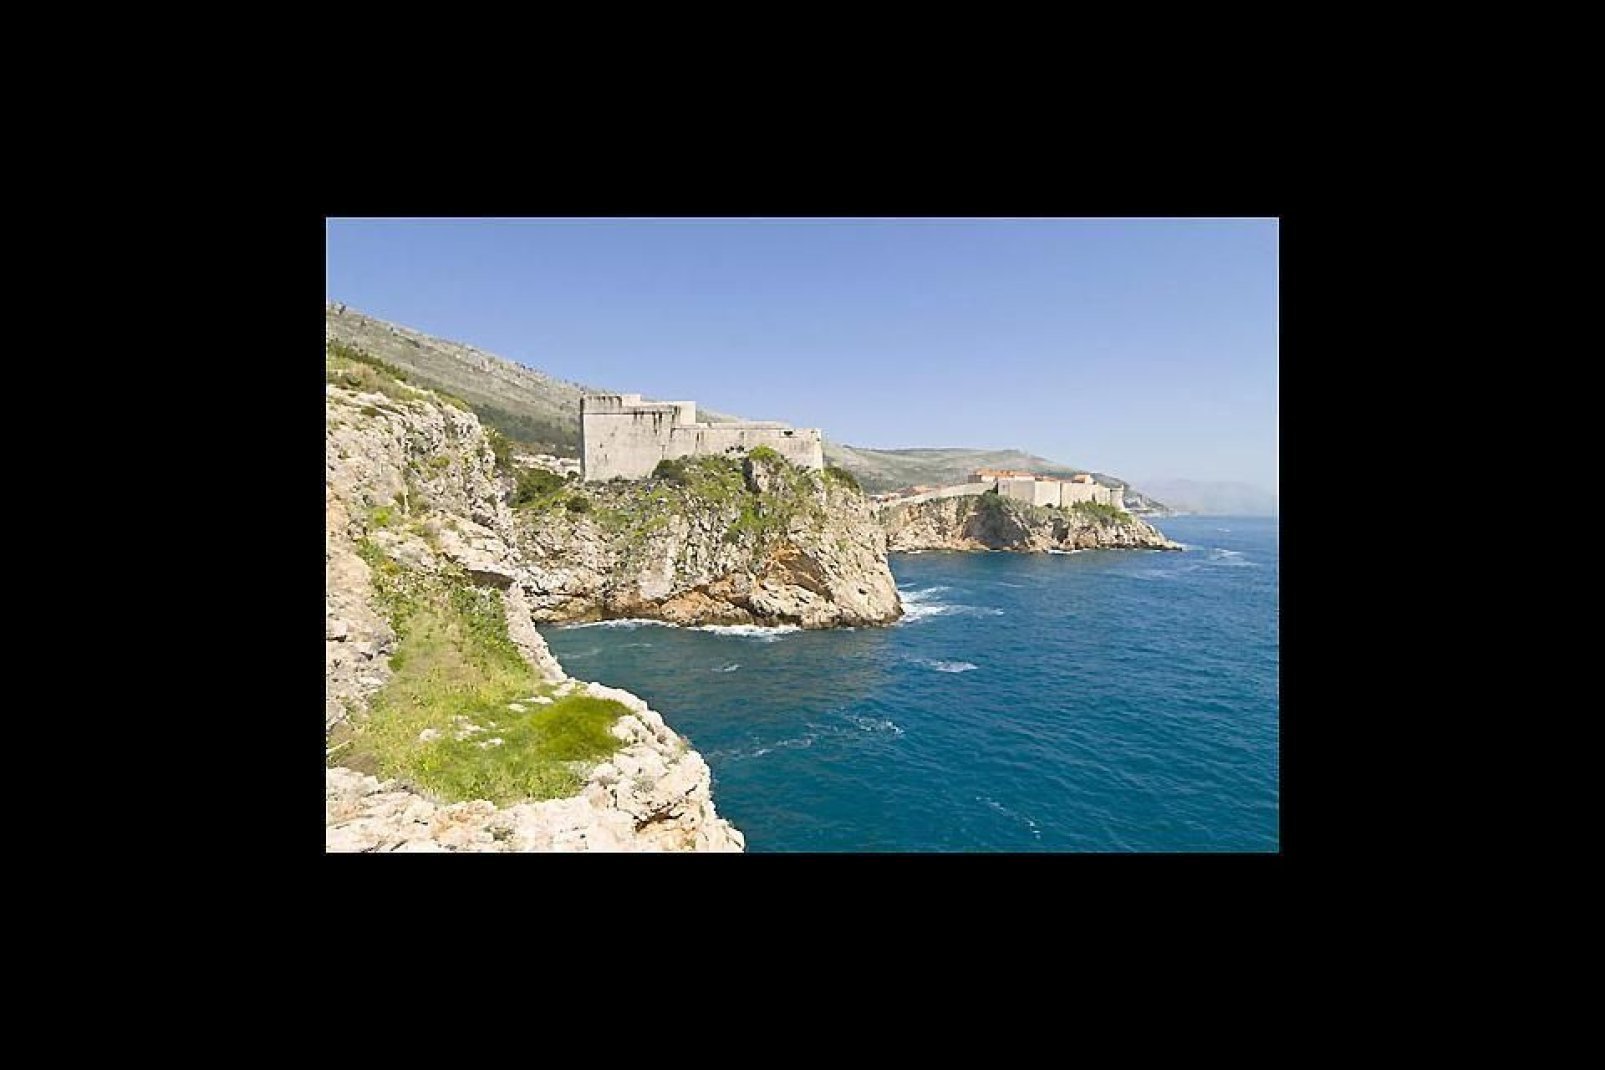 La formazione rocciosa di una parte della costa di Dubrovnik.